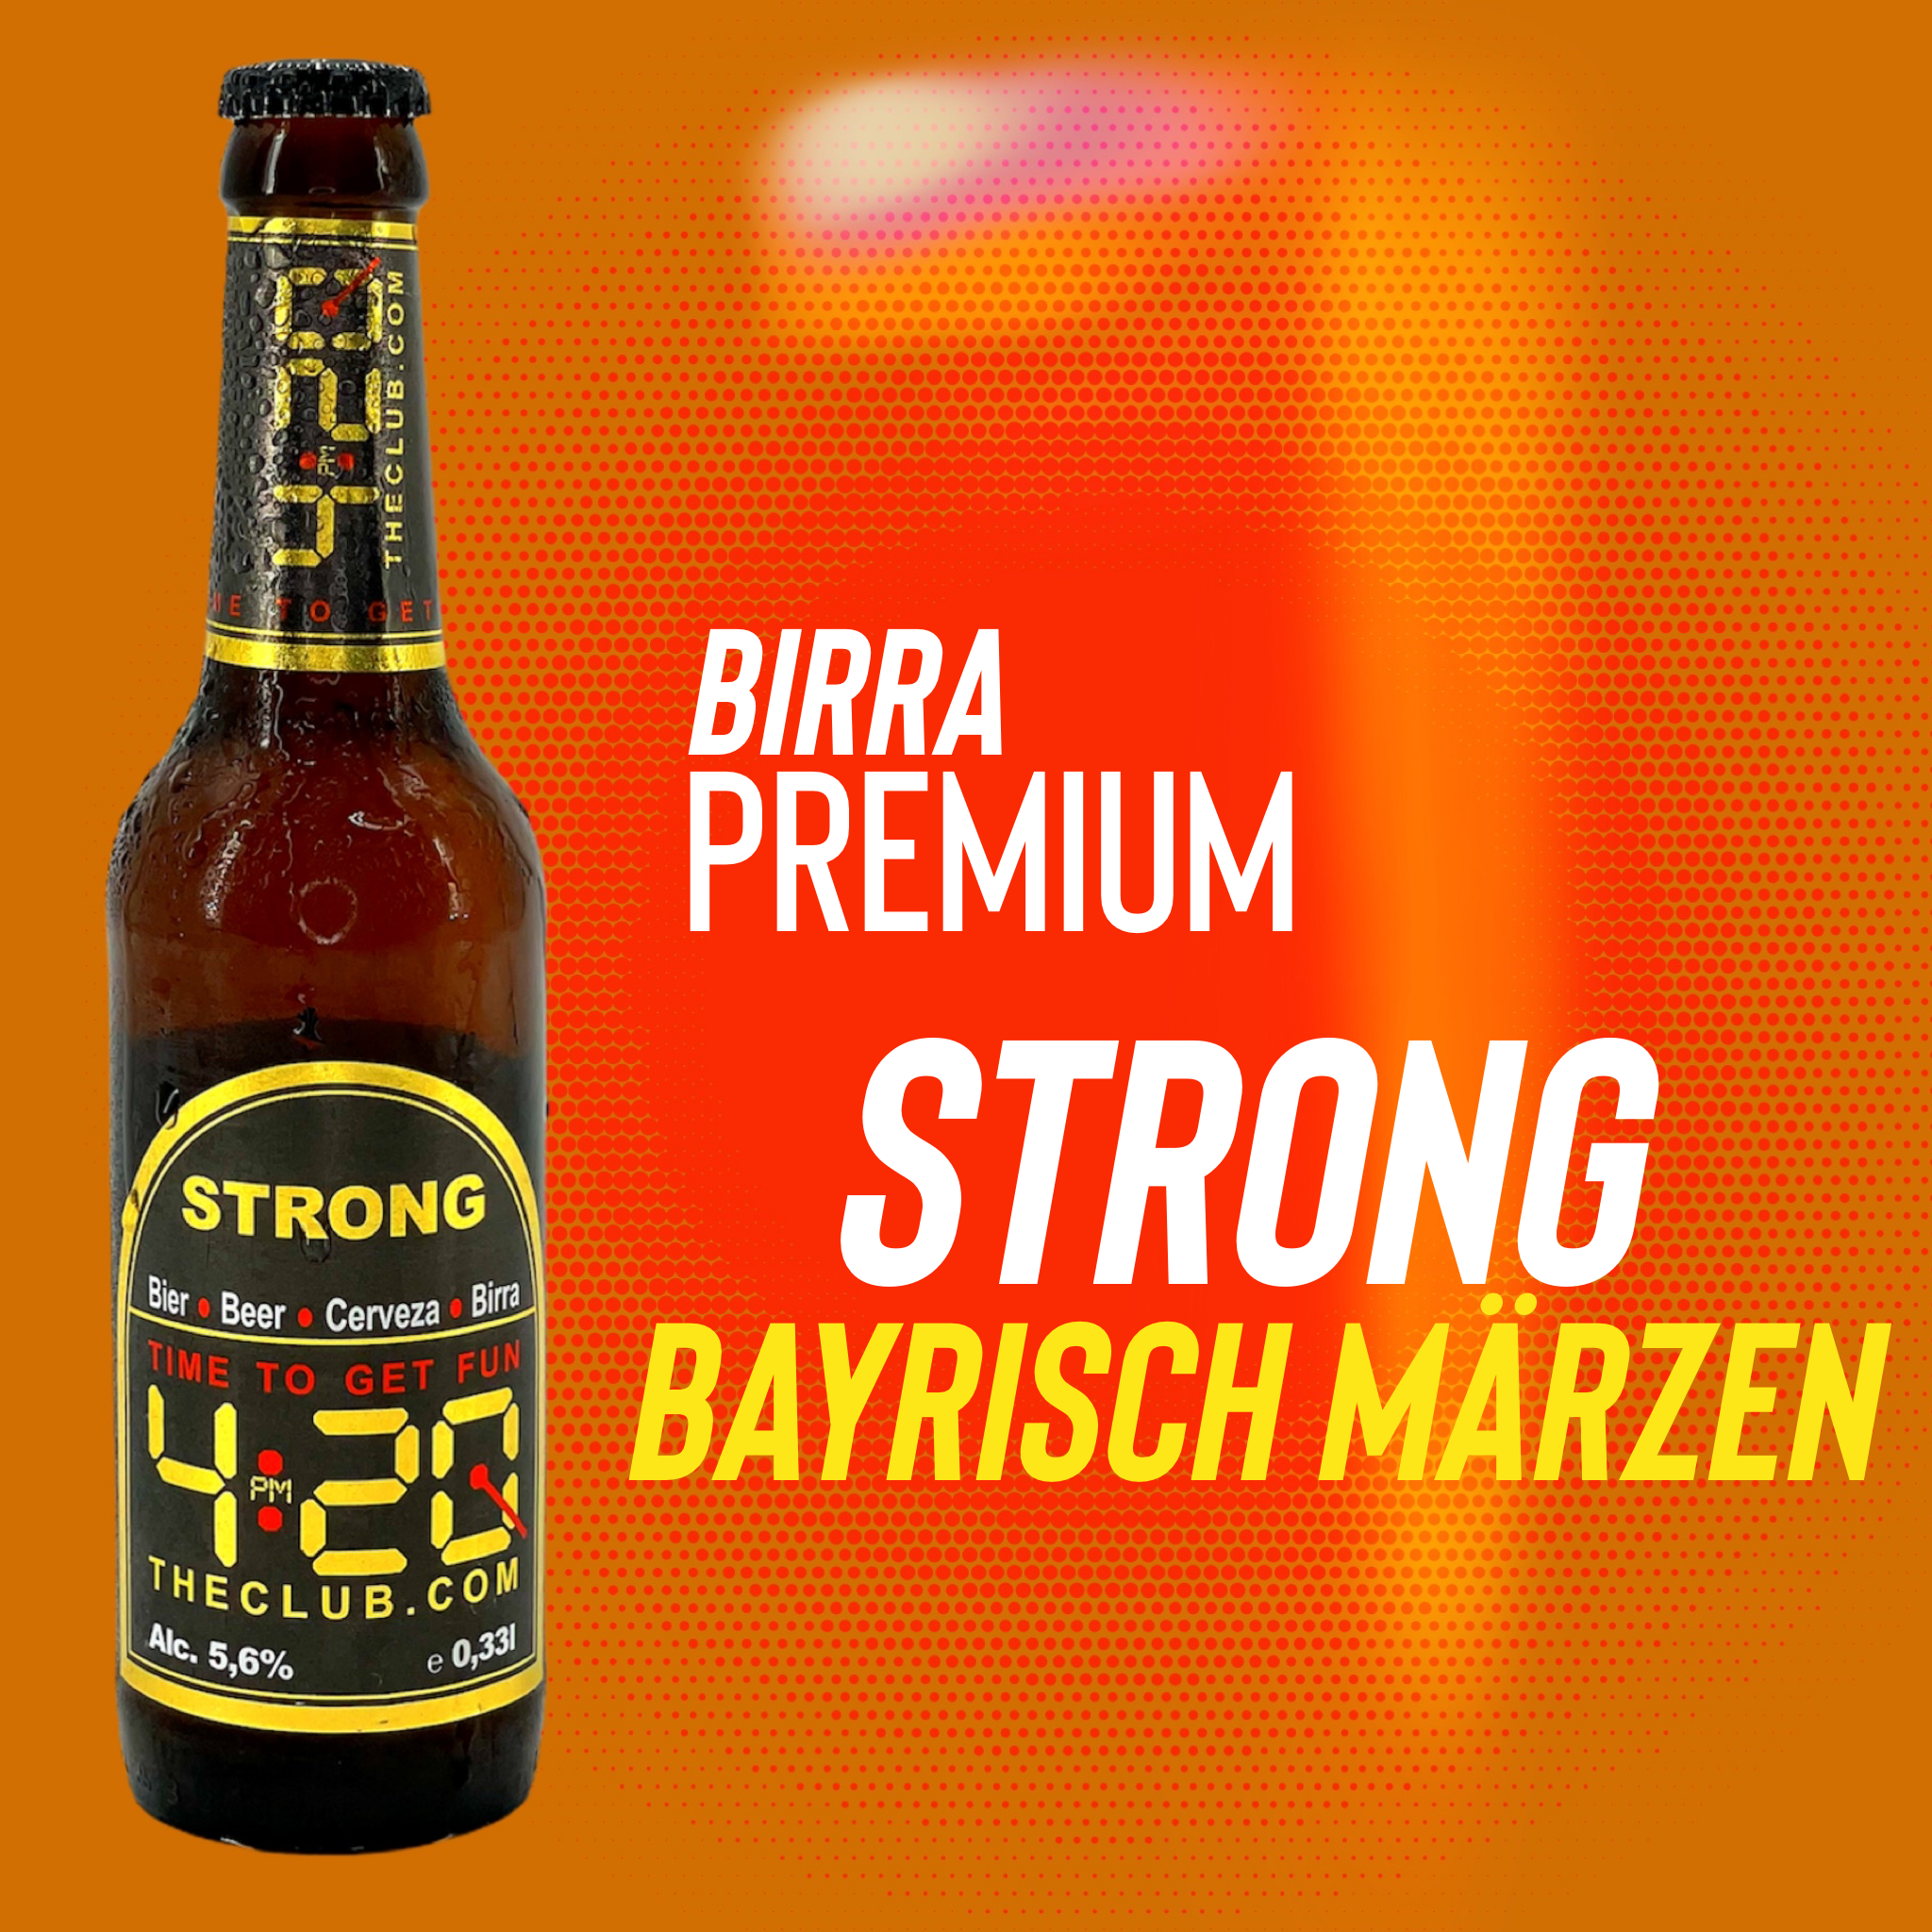 4:20 birra Strong